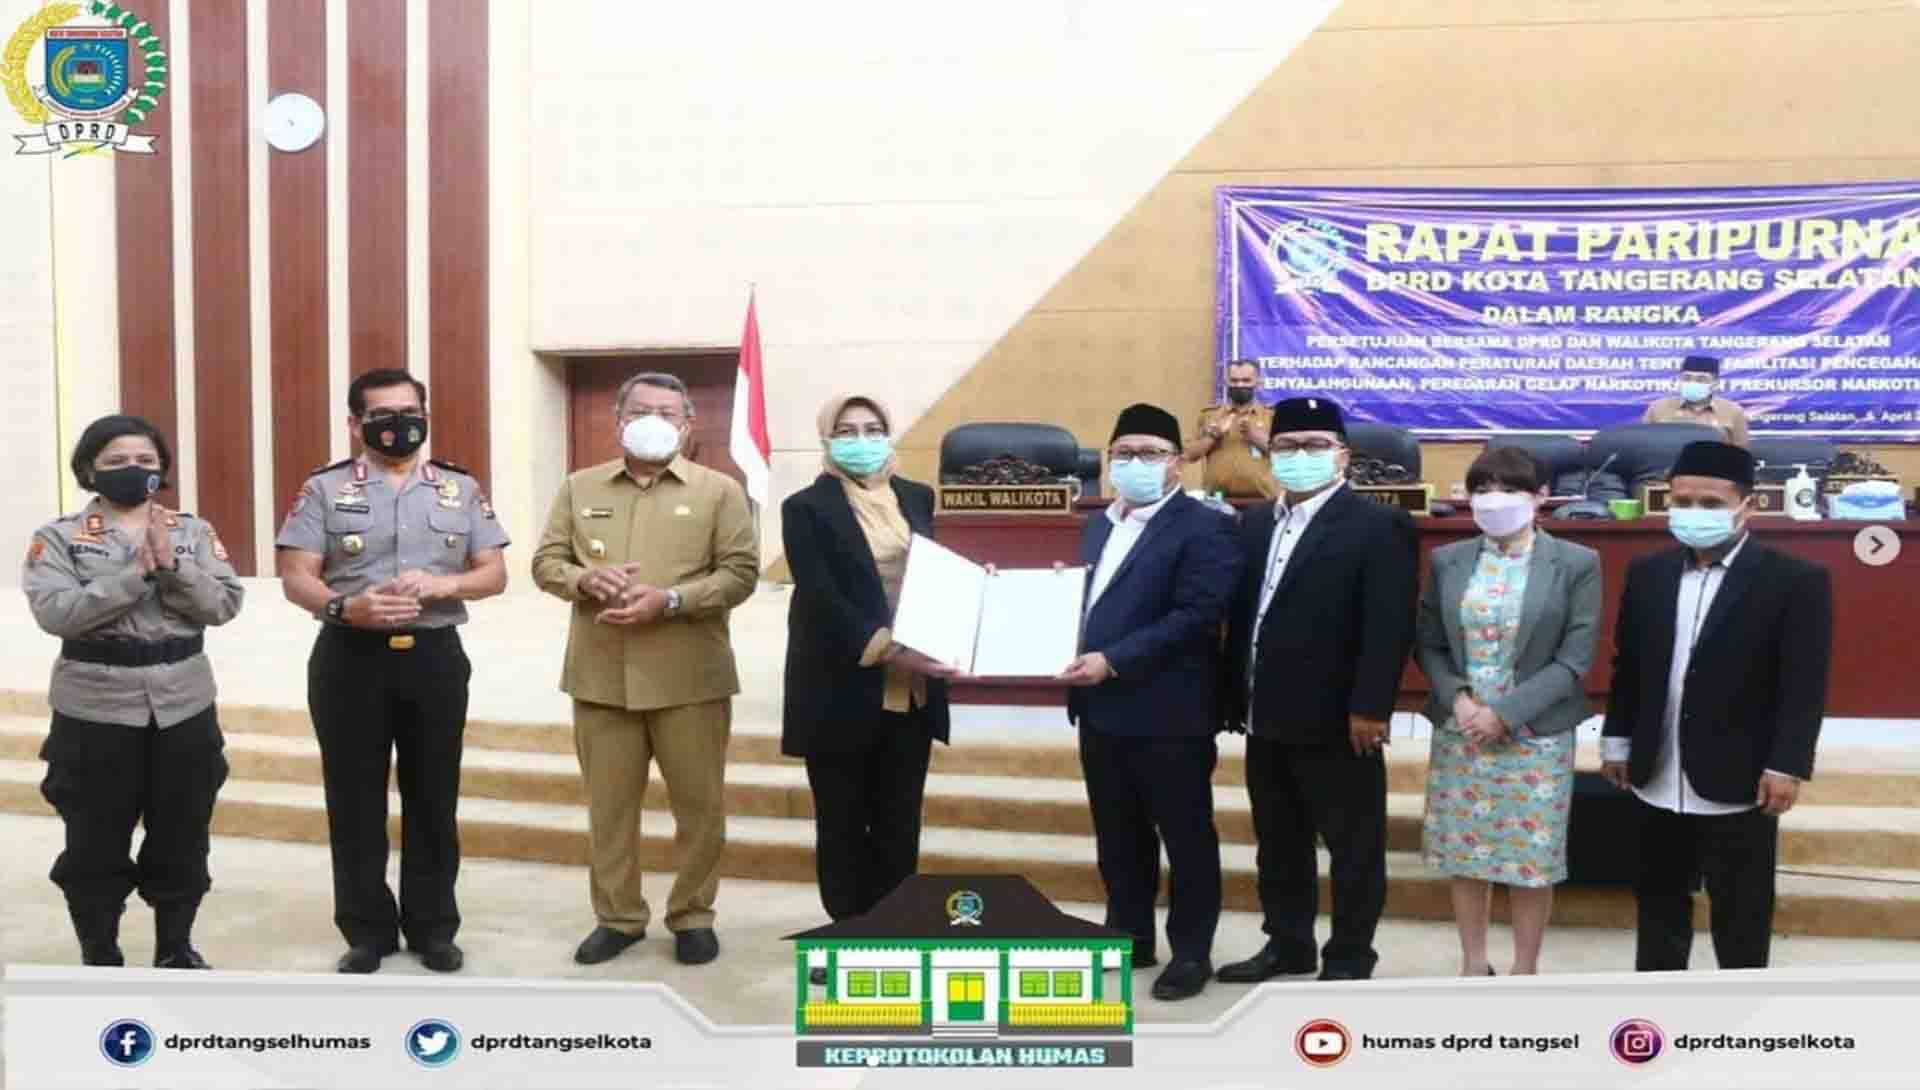 DPRD Kota Tangerang Selatan menggelar 3 (Tiga) Agenda Rapat Paripurna